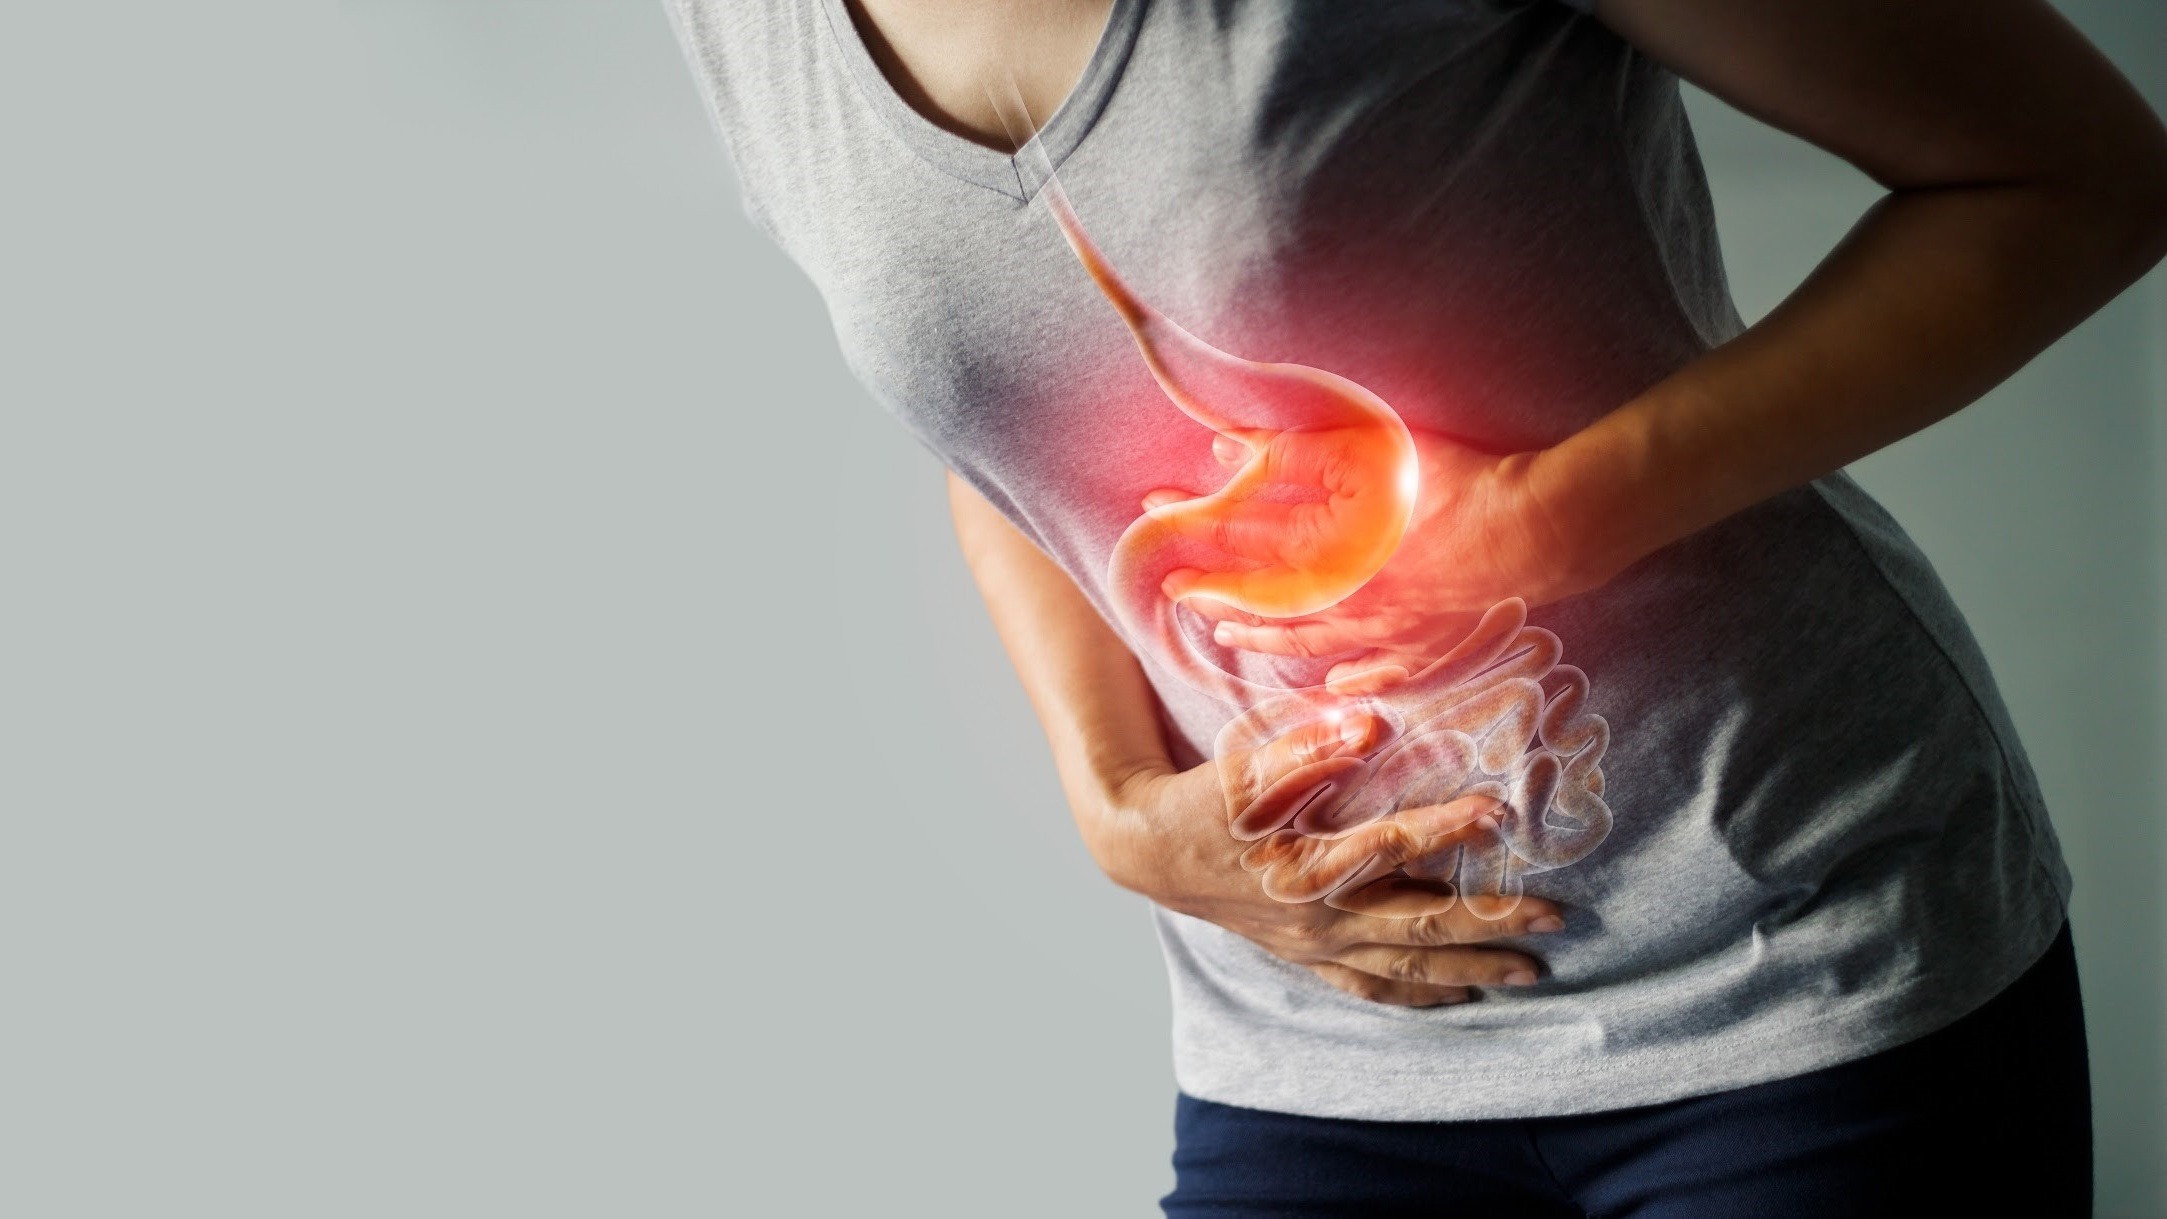 Huyệt thượng dạ có tác dụng gì trong việc giảm đau dạ dày?
